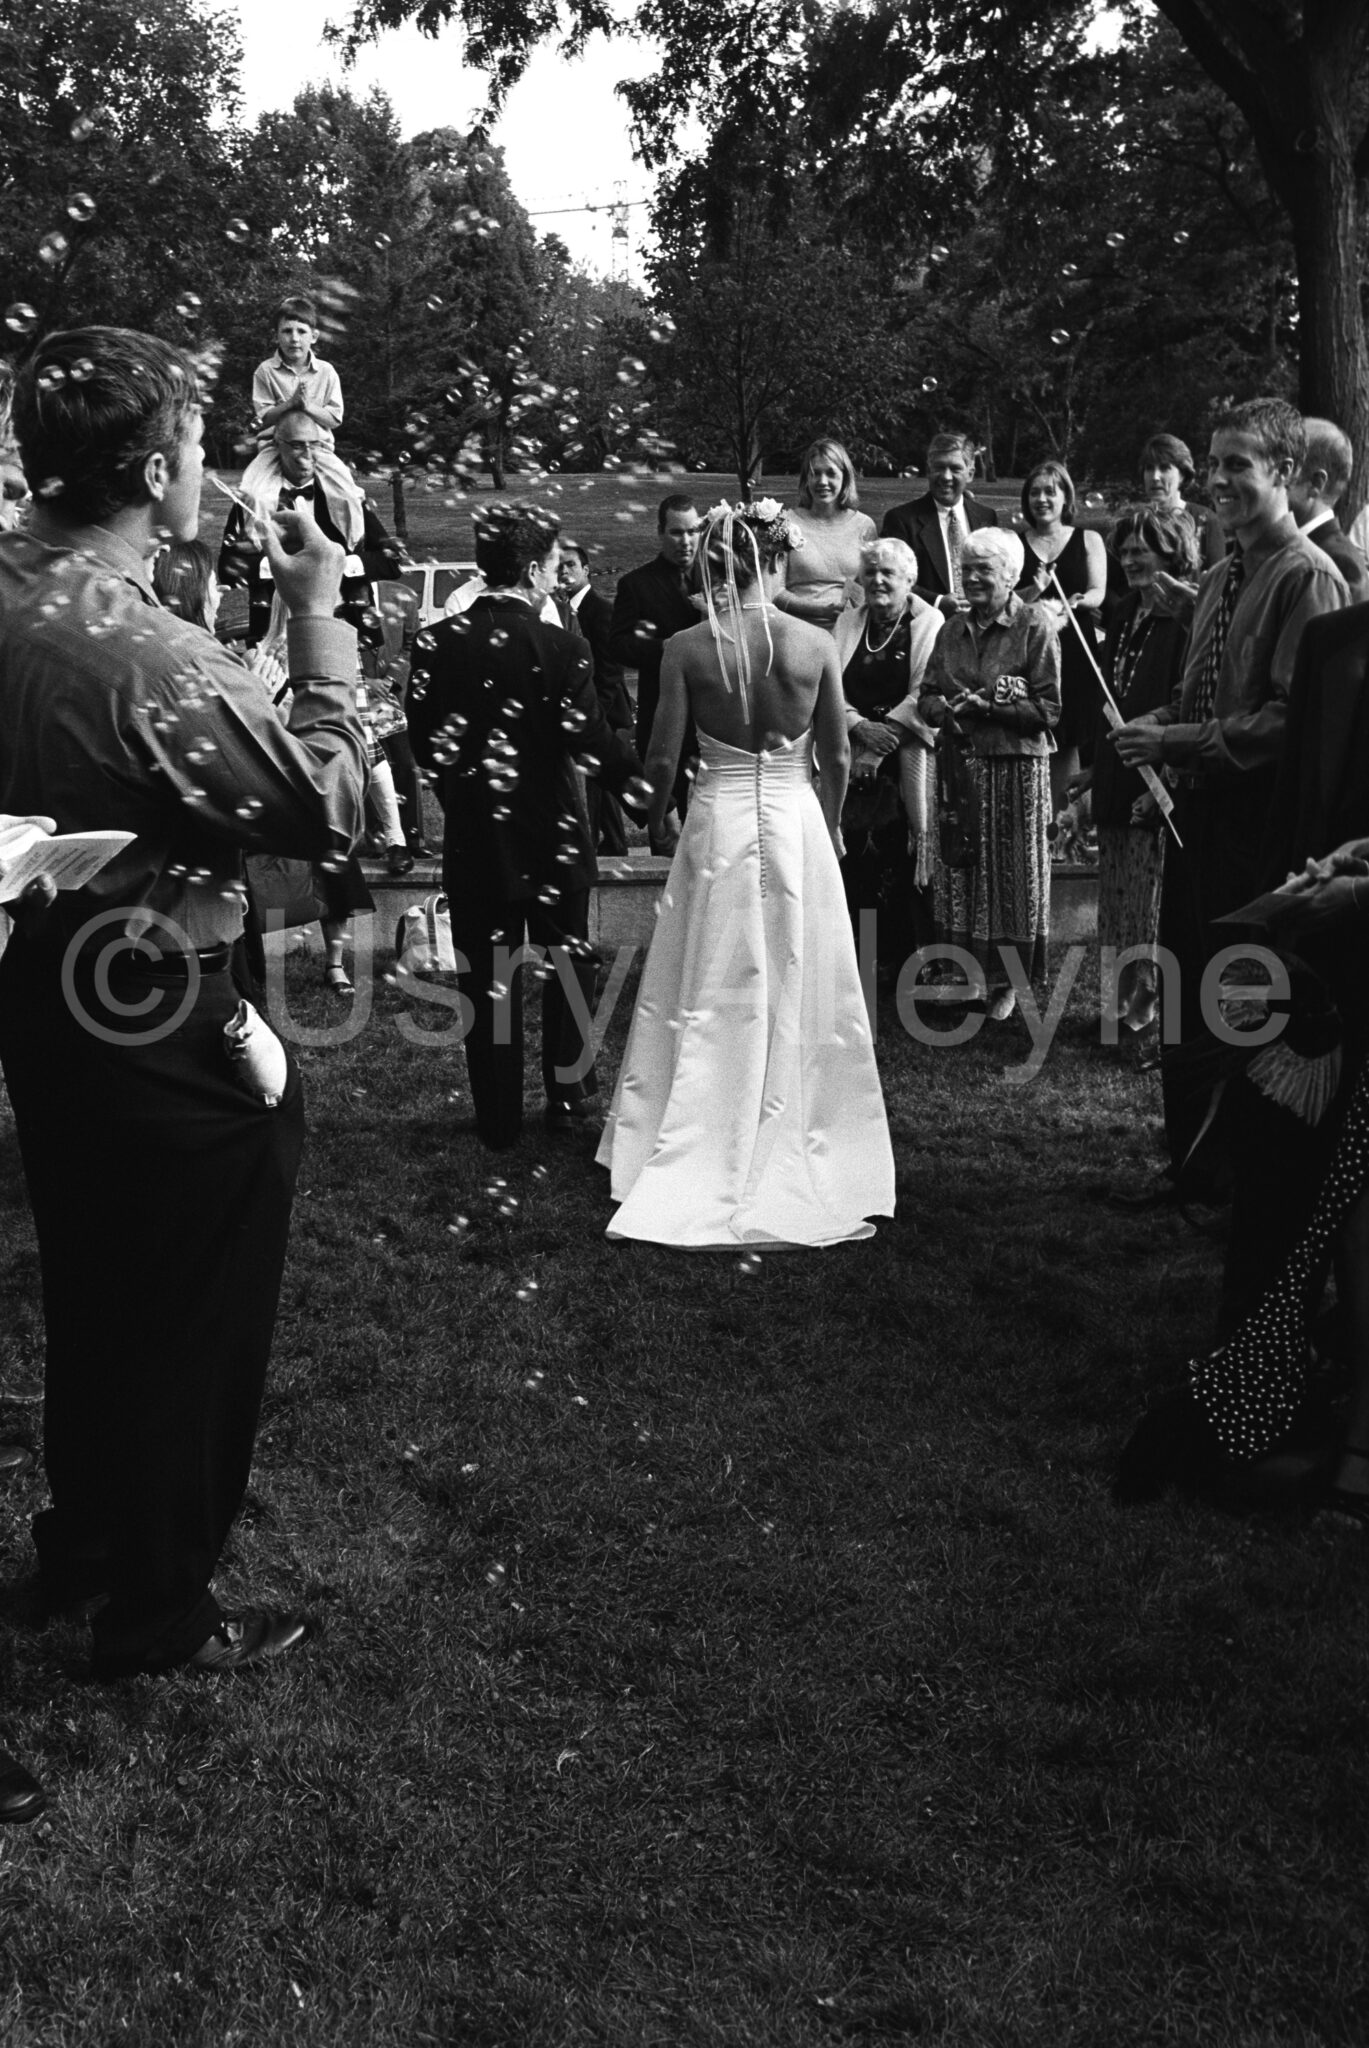 Wedding-Ceremony-Photography-0821040113